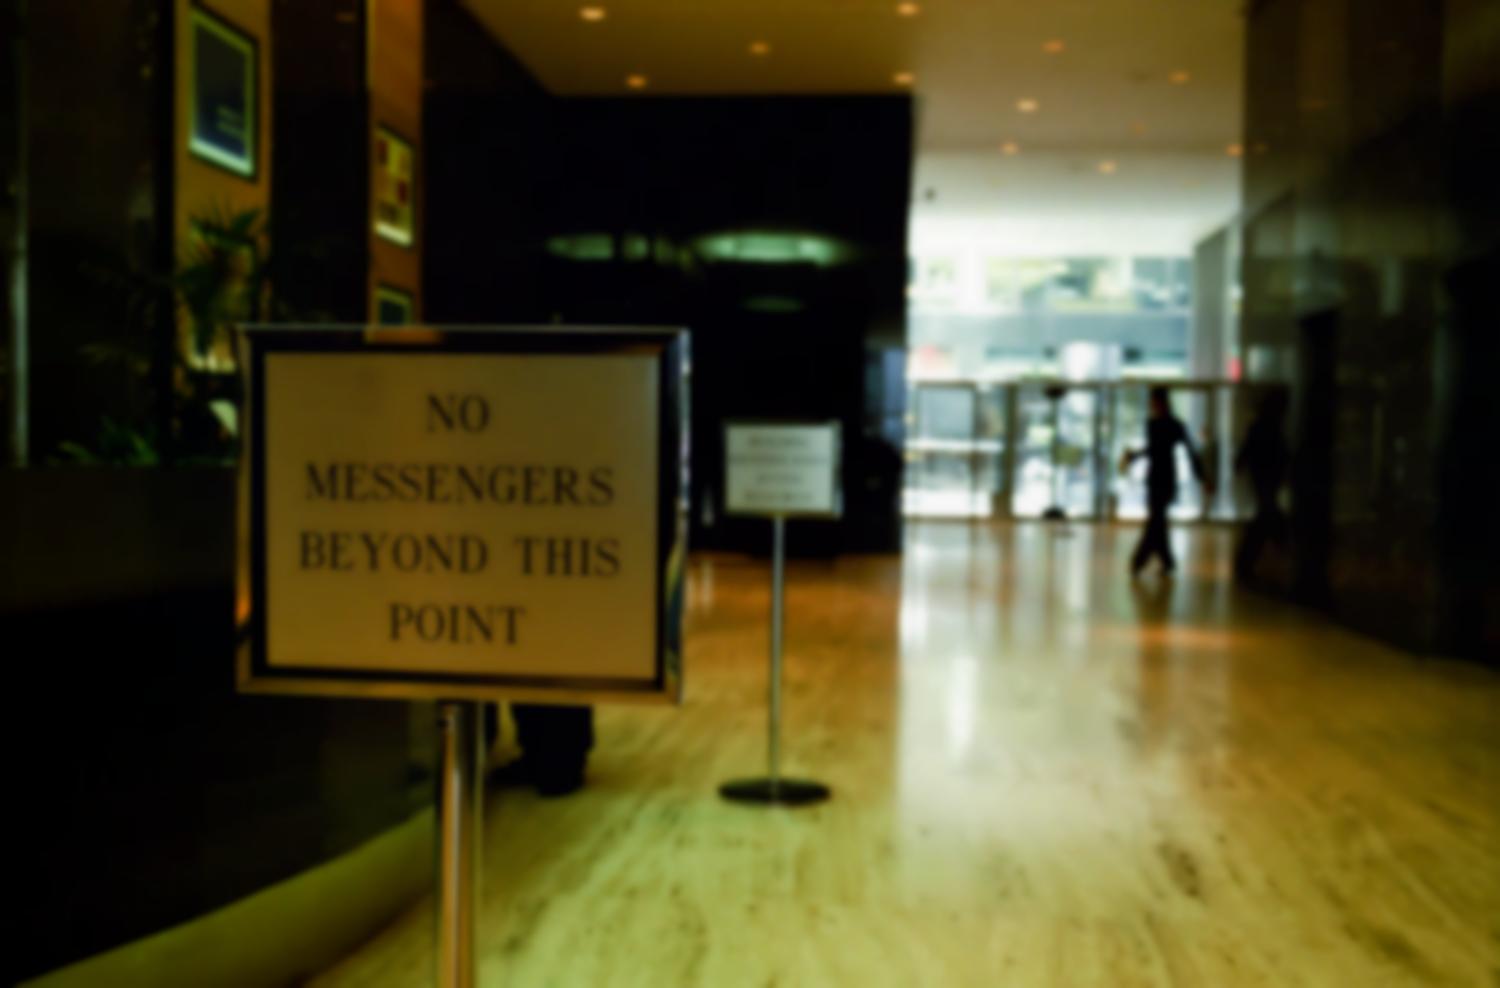 A l'entrée d'un hall d'immeuble dont on aperçoit une autre porte, un panneau interdit le passage : No messengers beyond this point. New York, juillet 2003.